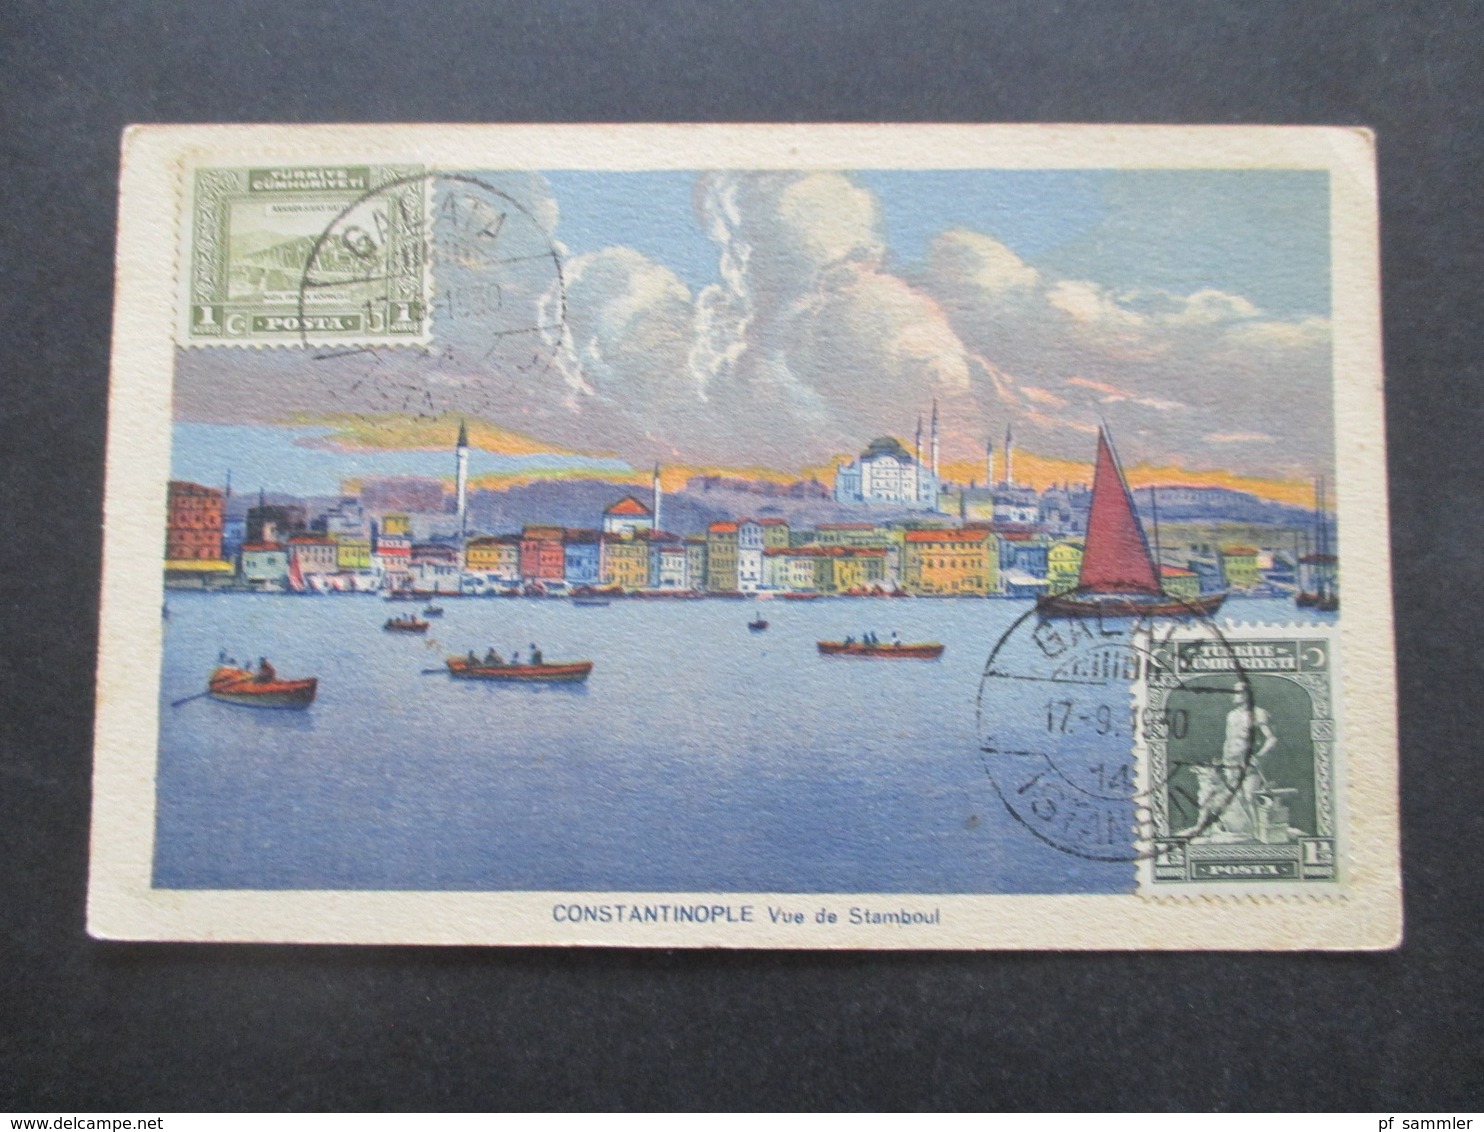 Türkei 1930 Bildseitig Frankierte AK Constantinople Vue De Stamboul Stempel Galata Nach Jugoslawien Gesendet - Lettres & Documents